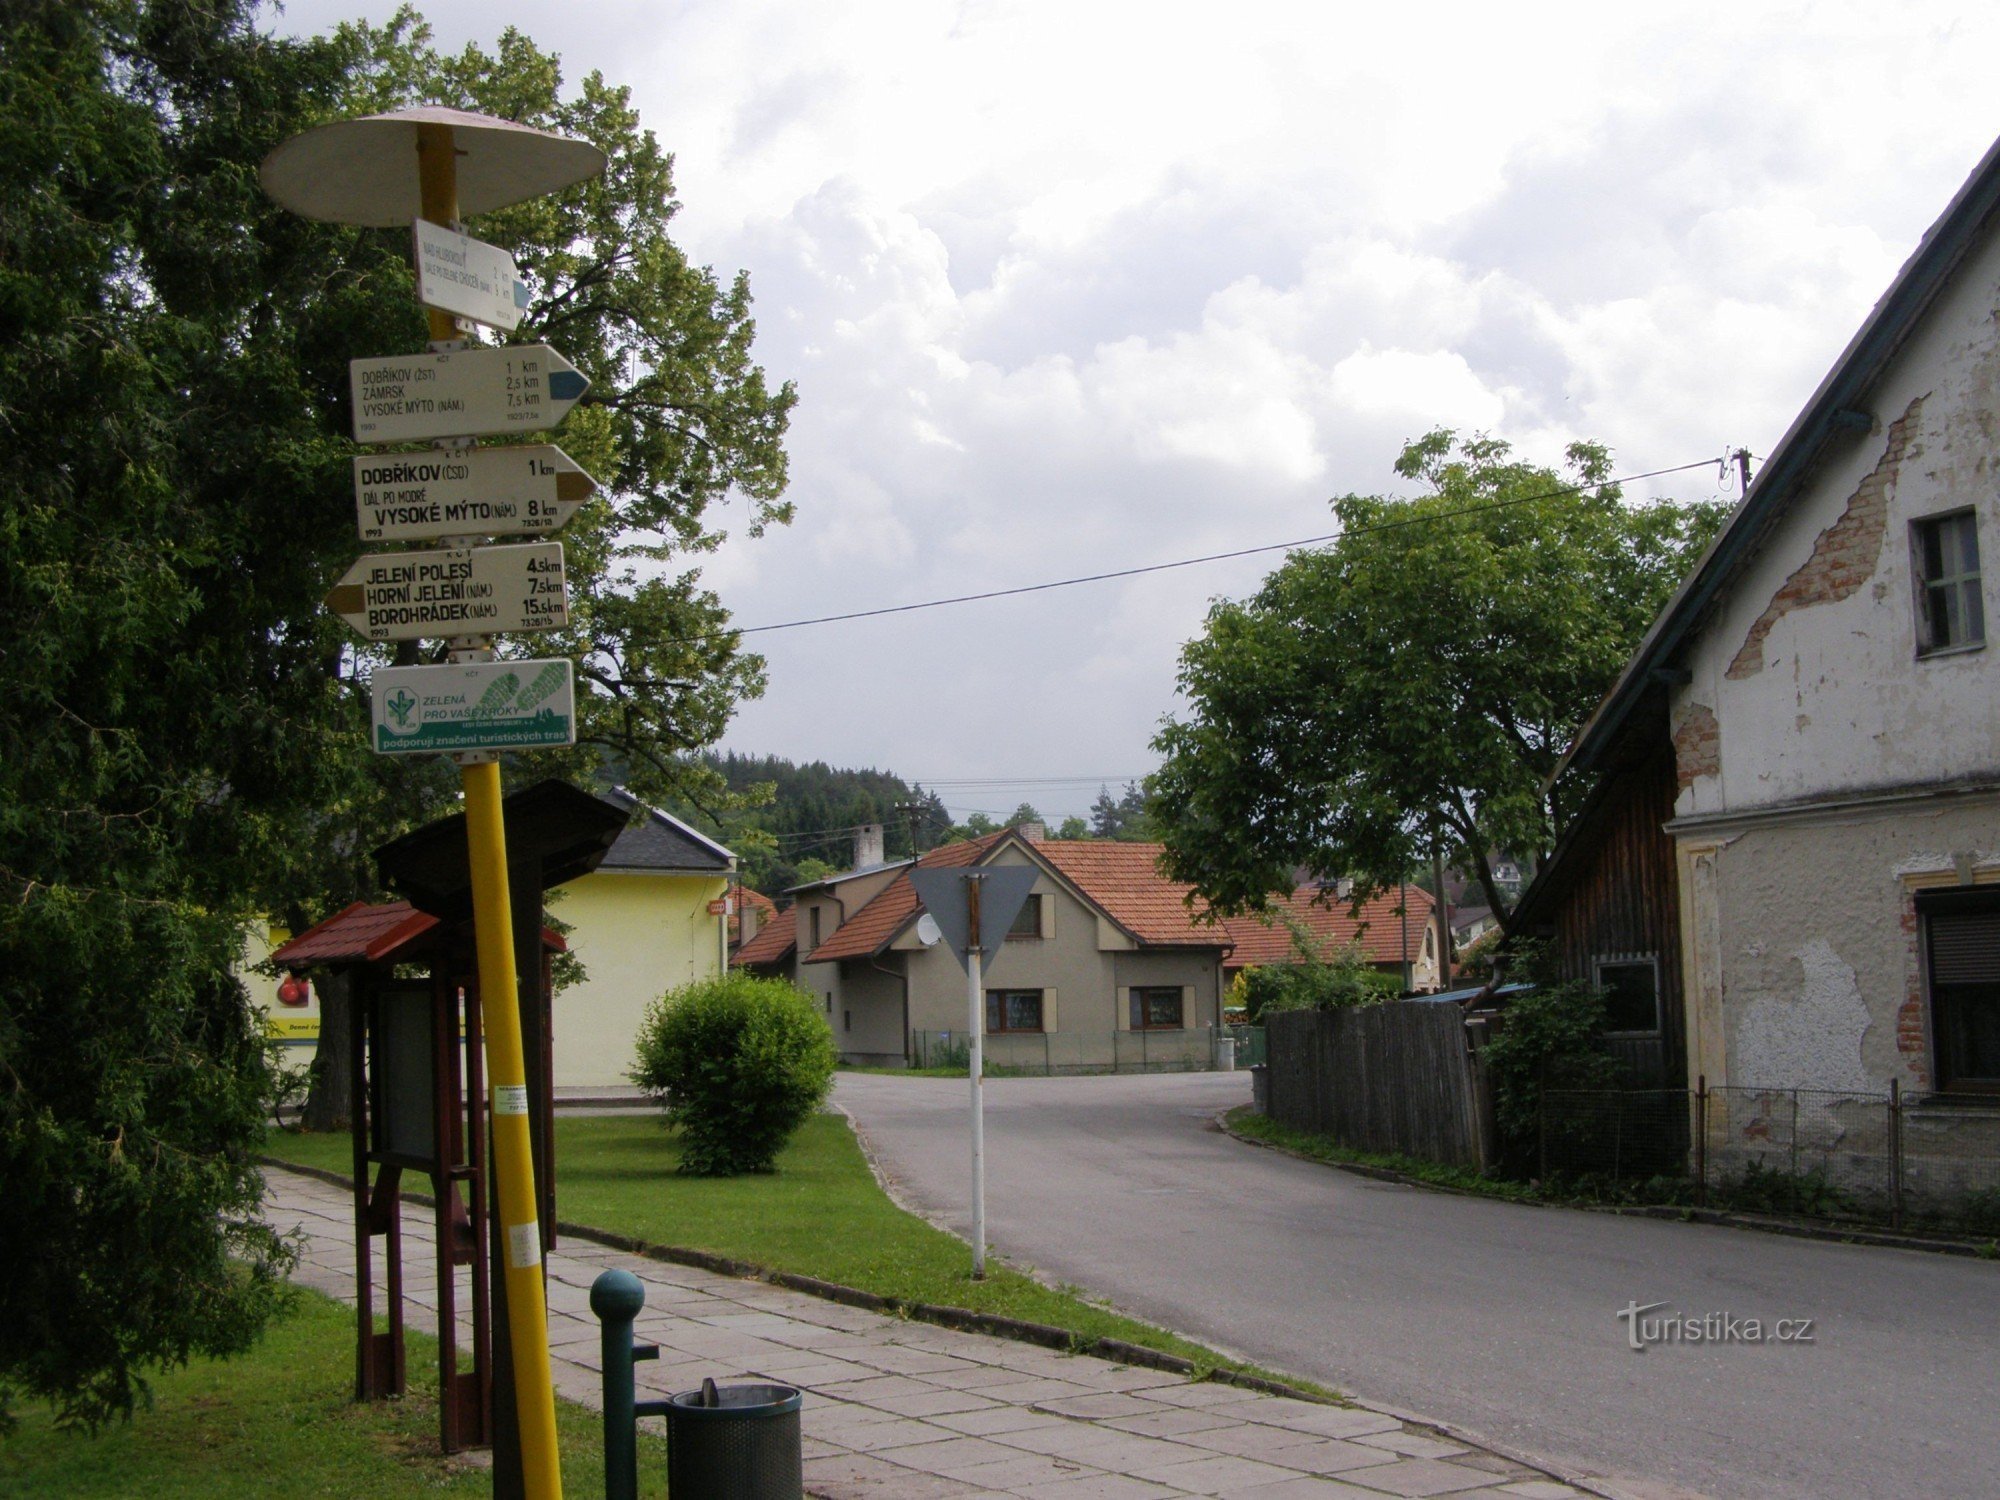 carrefour touristique Dobříkov - village